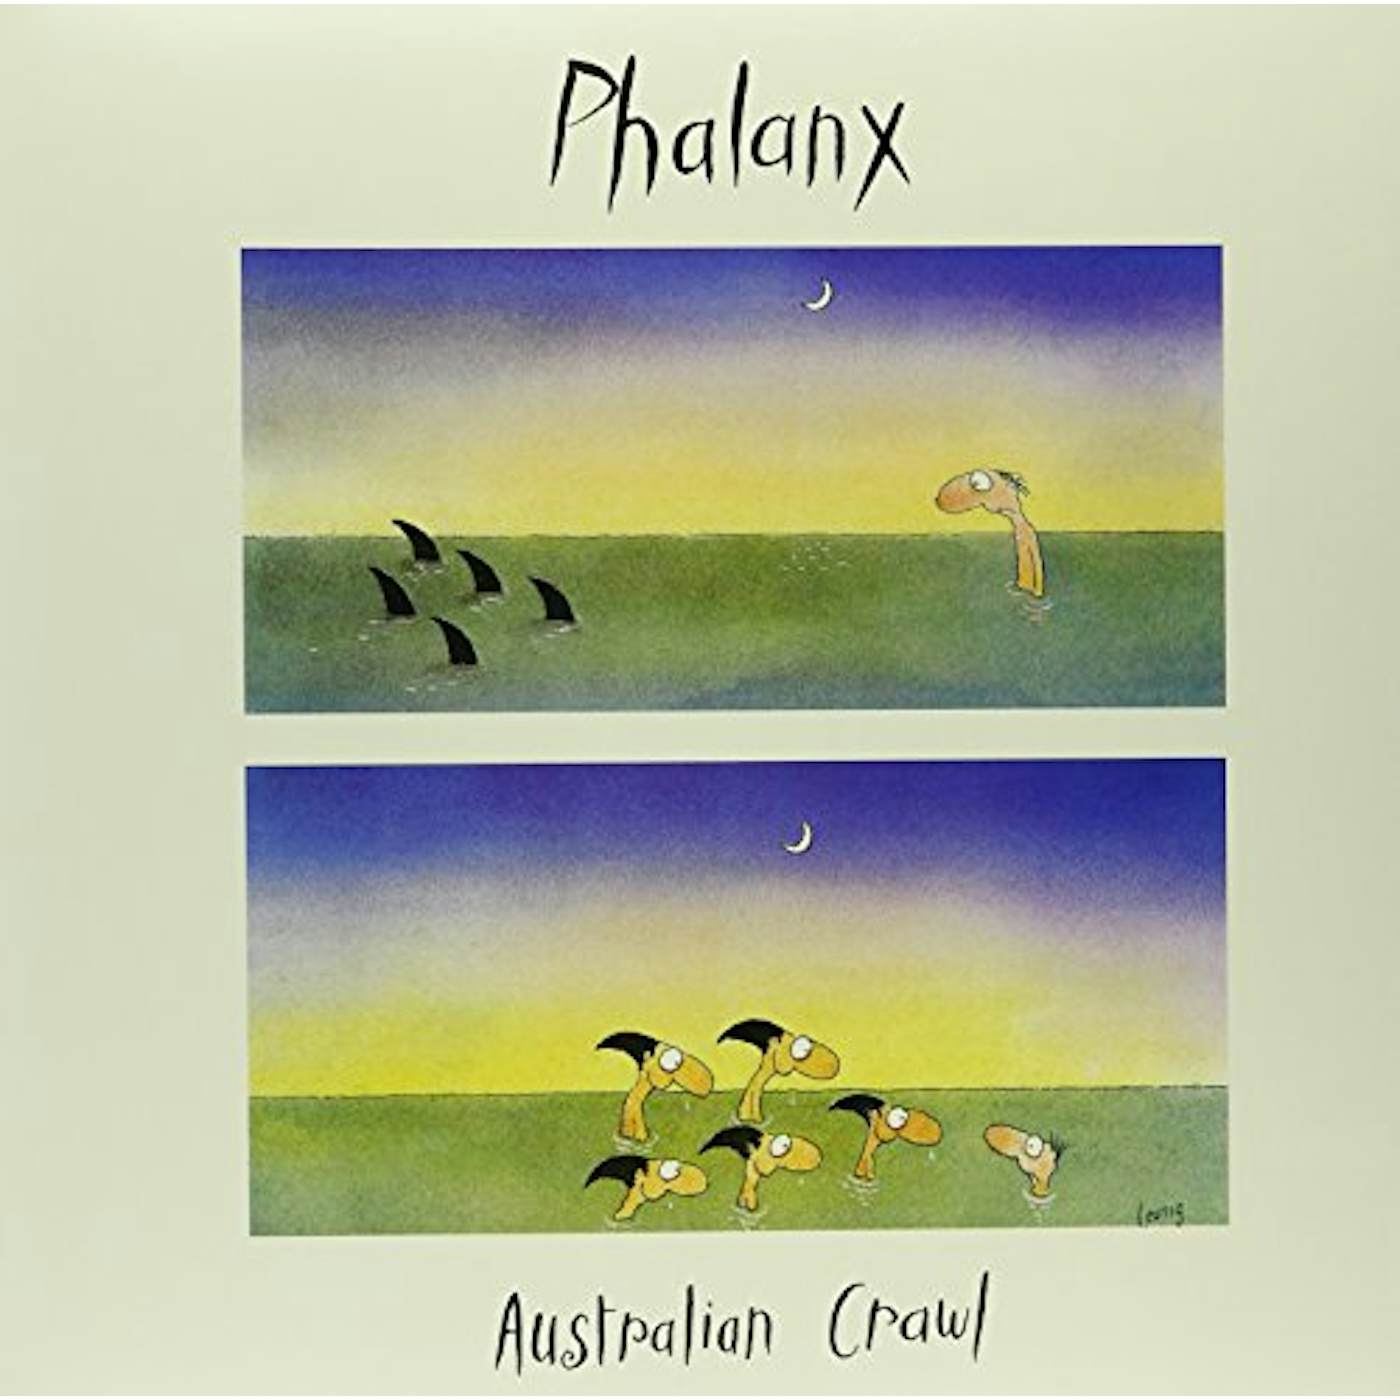 Australian Crawl Phalanx Vinyl Record